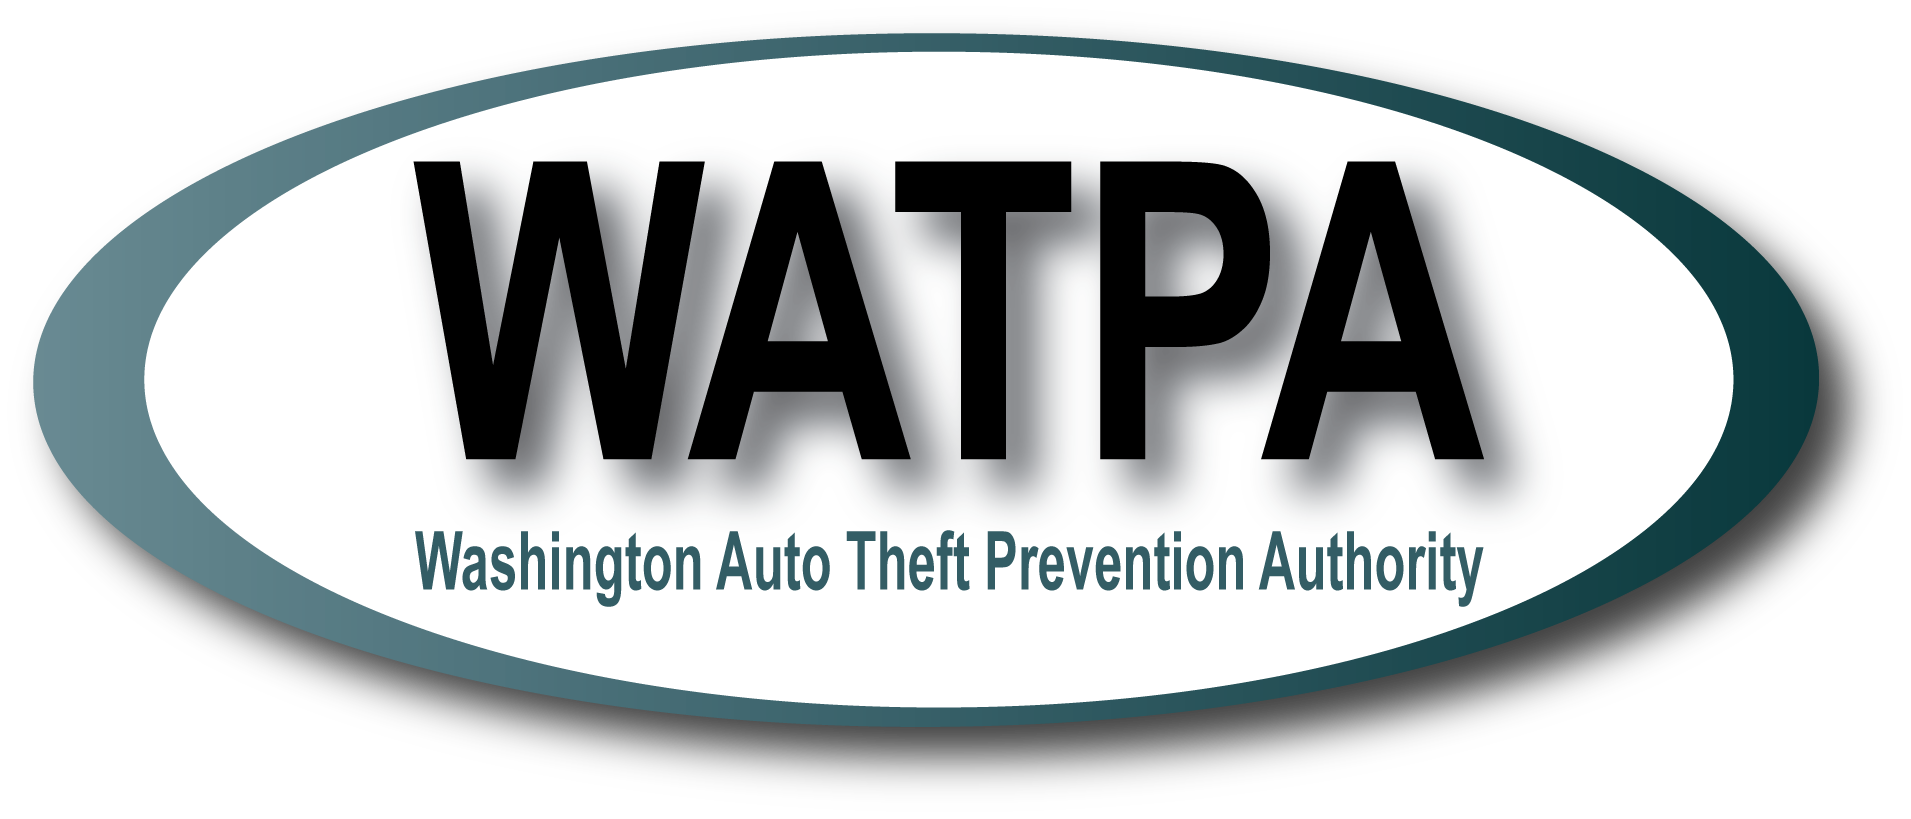 Washington Auto Theft Prevention Authority